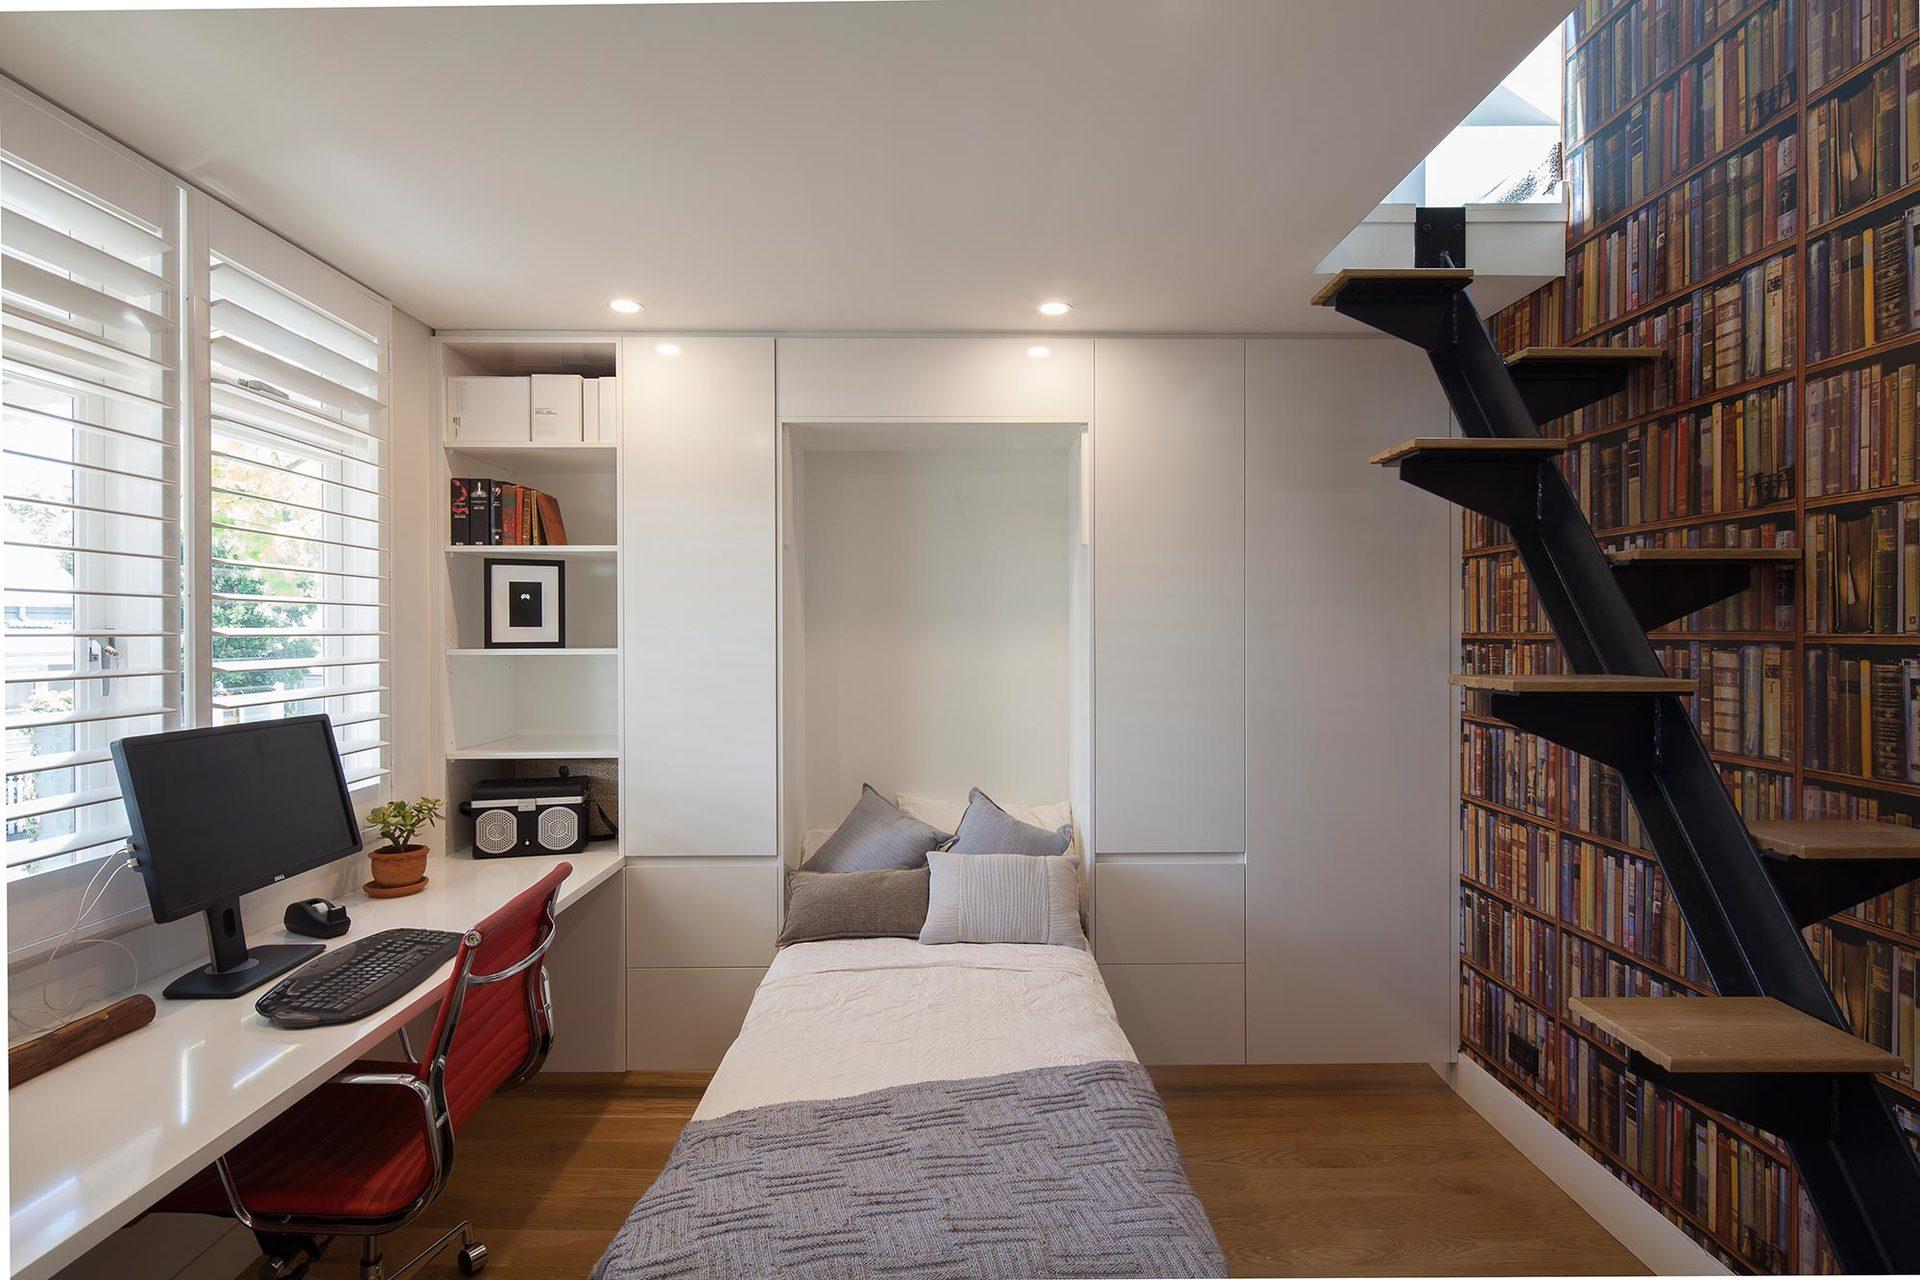 Спальня кабинет дизайн, 47 фото идей по планировке и зонированию рабочего пространства